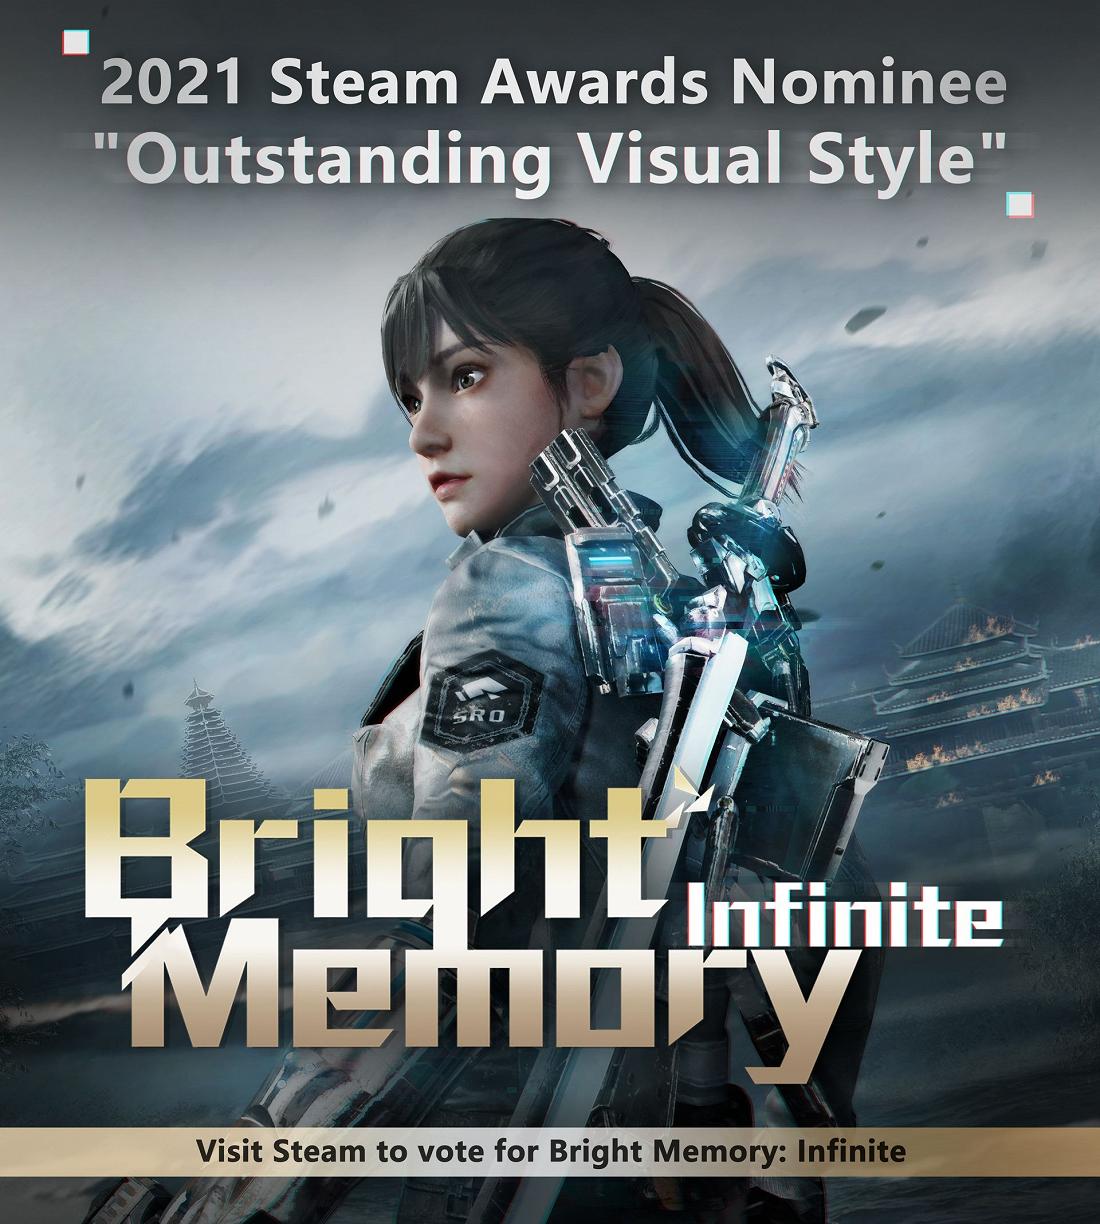 Bright Memory: Infinite номинирована на премию Steam в категории «Выдающийся визуальный стиль»